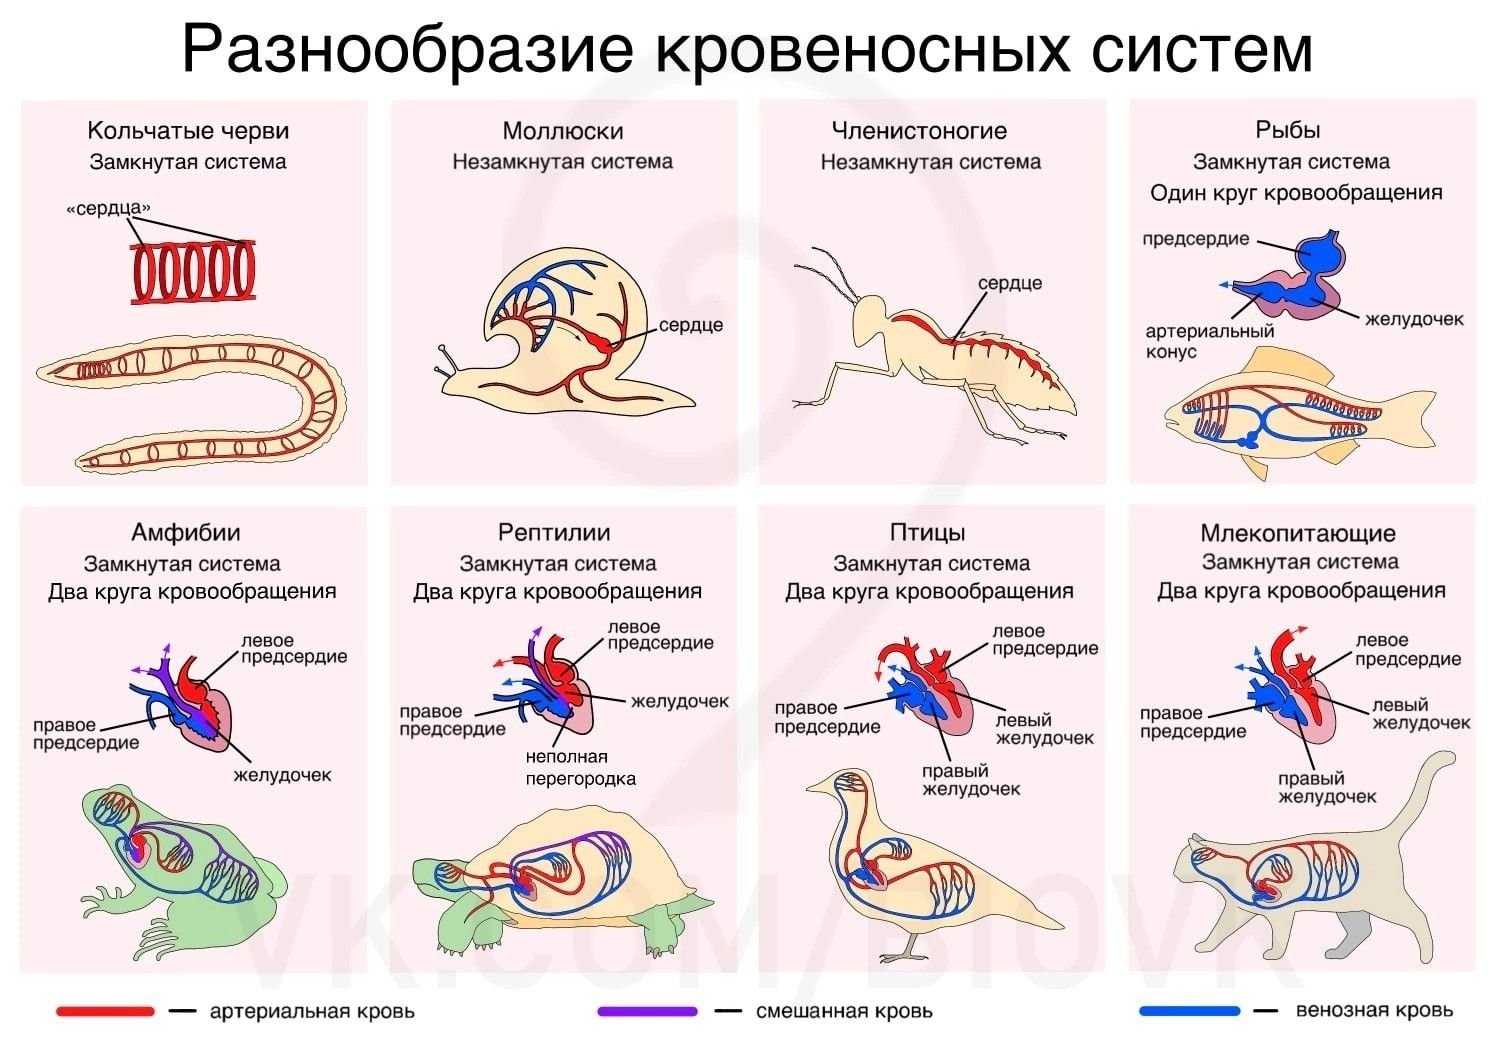 Земноводные пресмыкающиеся млекопитающие строение кровеносной системы сходство